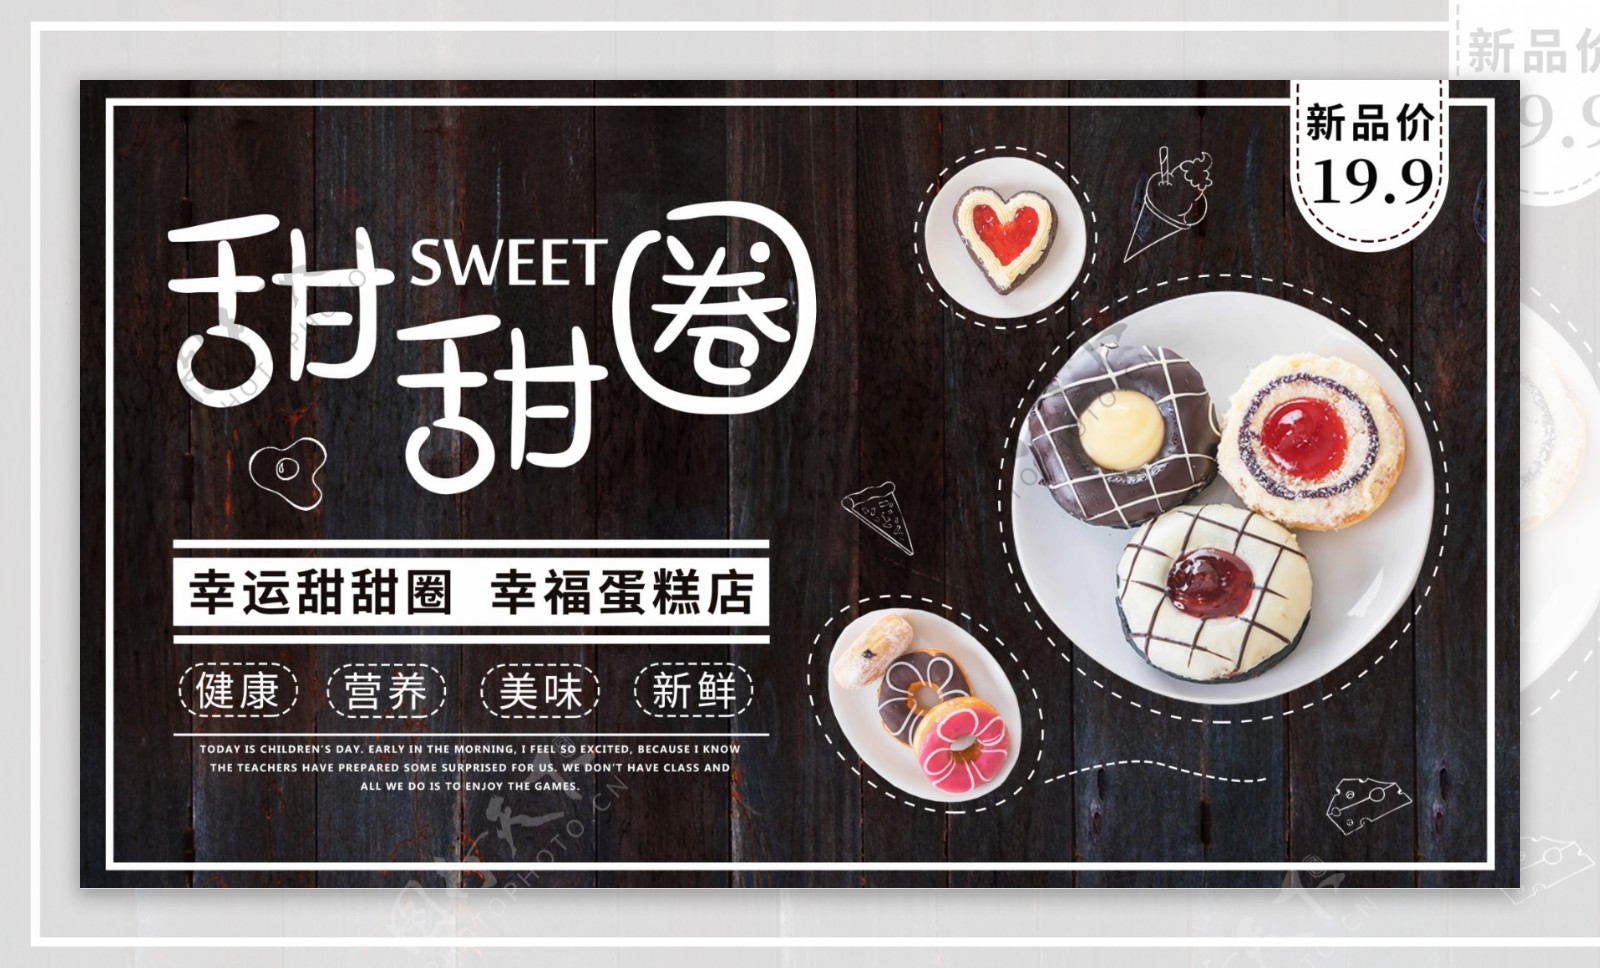 可爱风格甜甜圈甜品促销海报